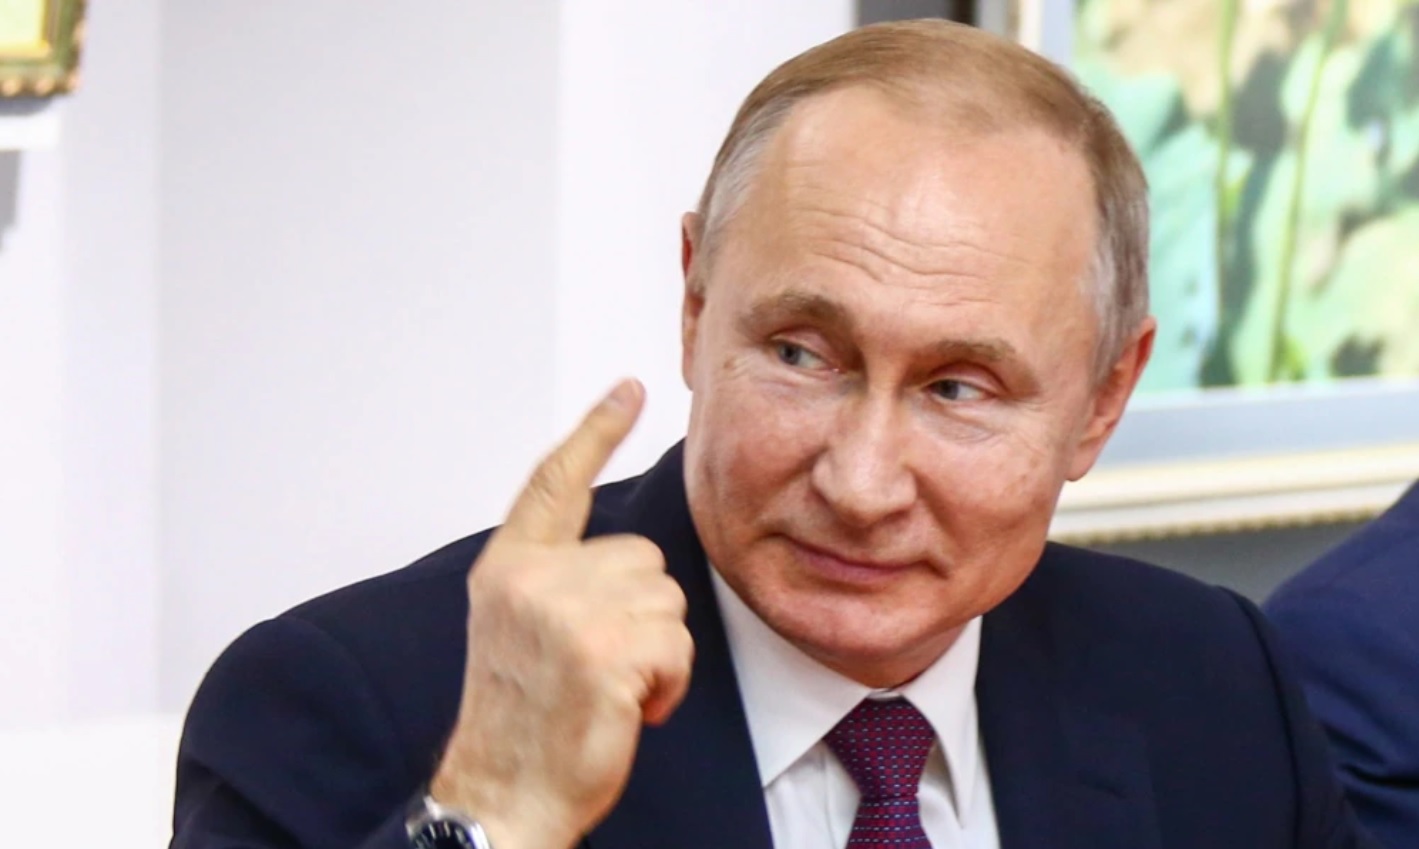  TEORIJE ZAVERE o Putinu i njegovom zdravlju! Evo kako zapadni pa i Srpski mediji šire dezinformacije o predsedniku Rusije